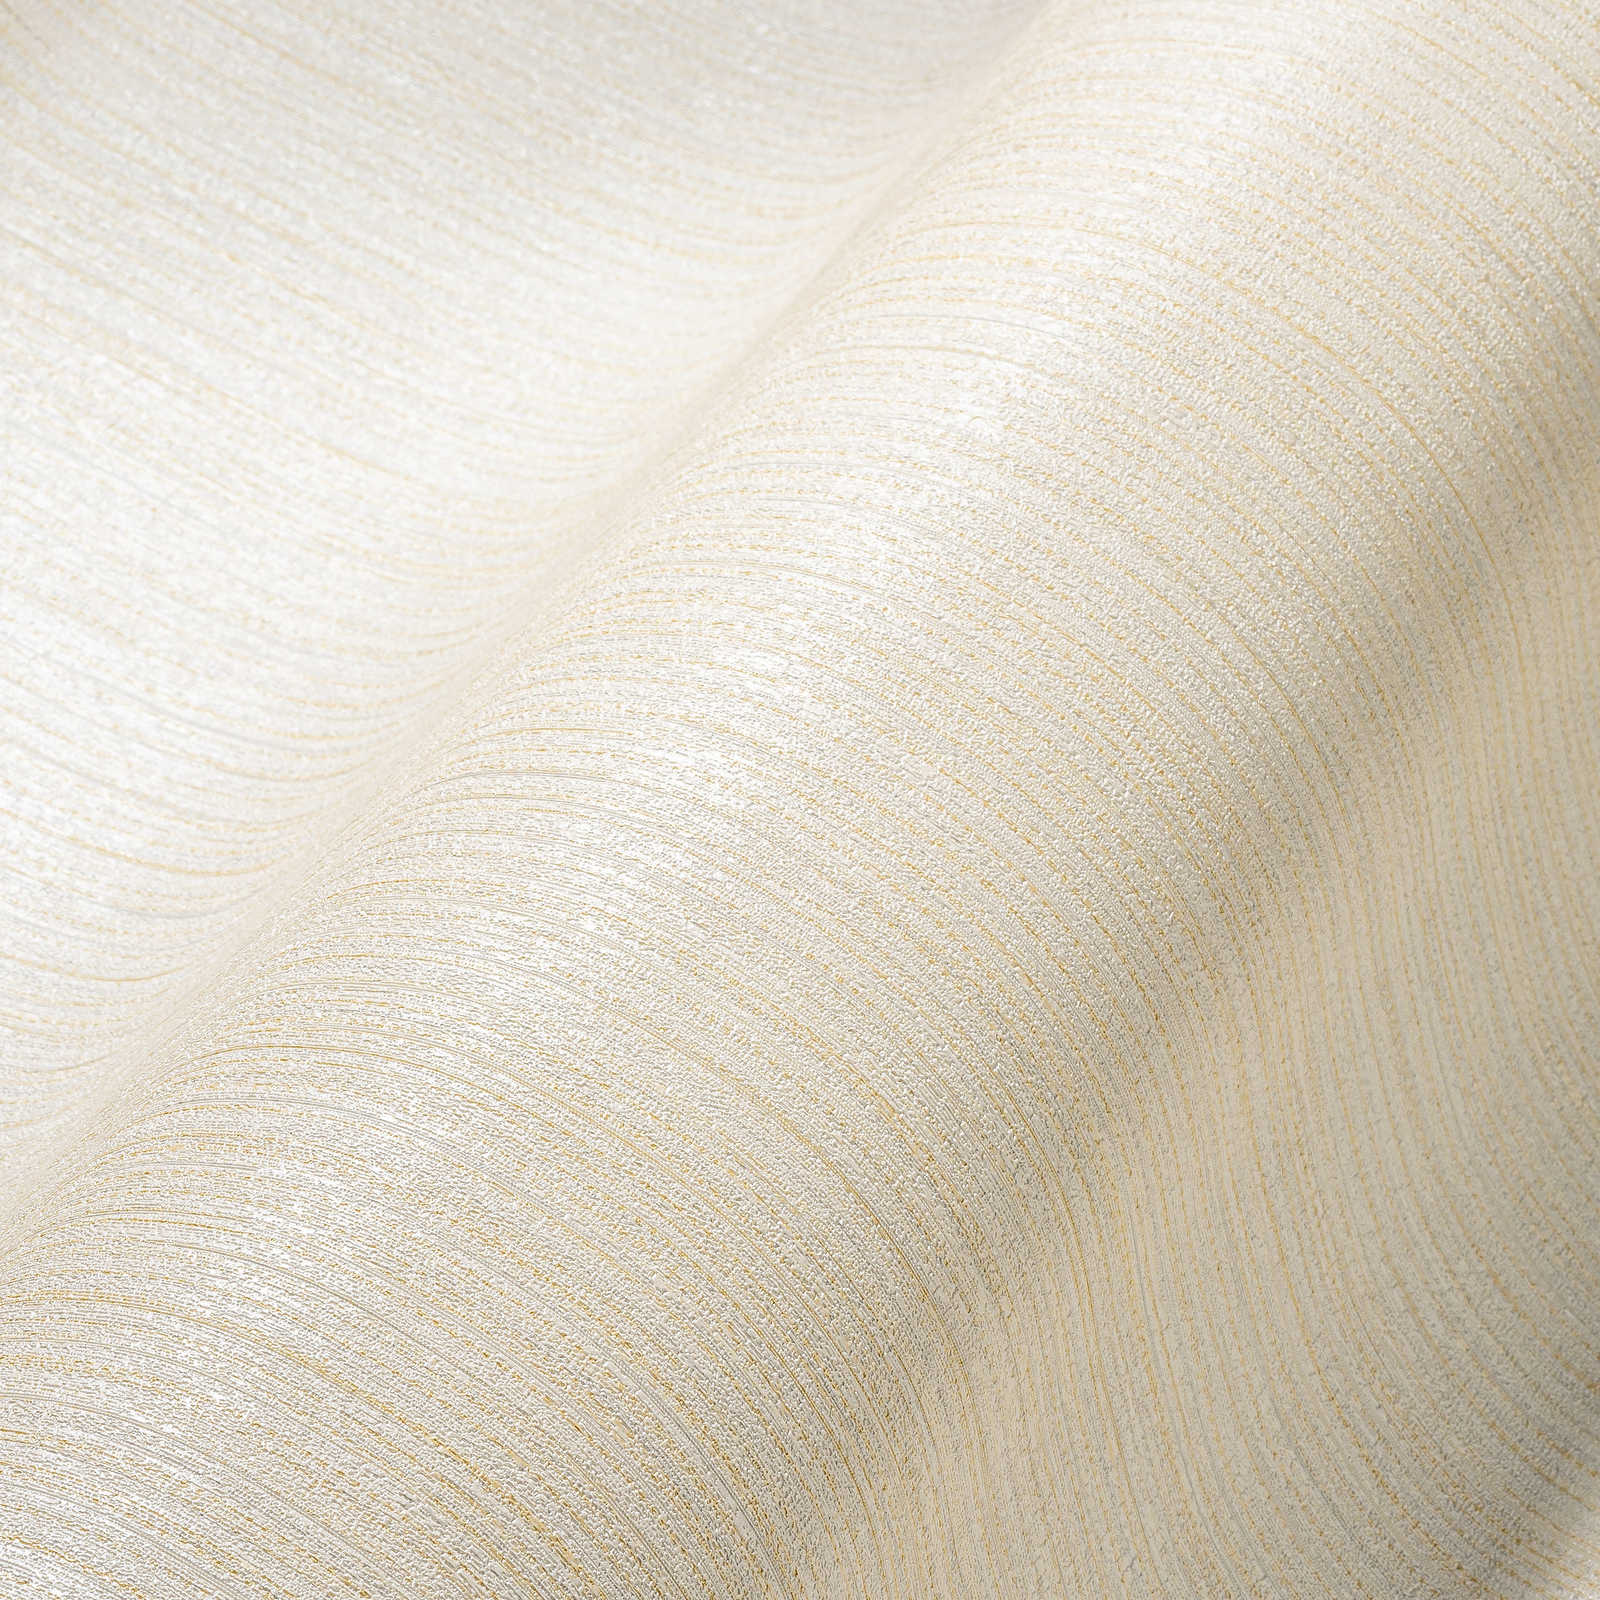             Papier peint uni ivoire avec structure de lignes - crème
        